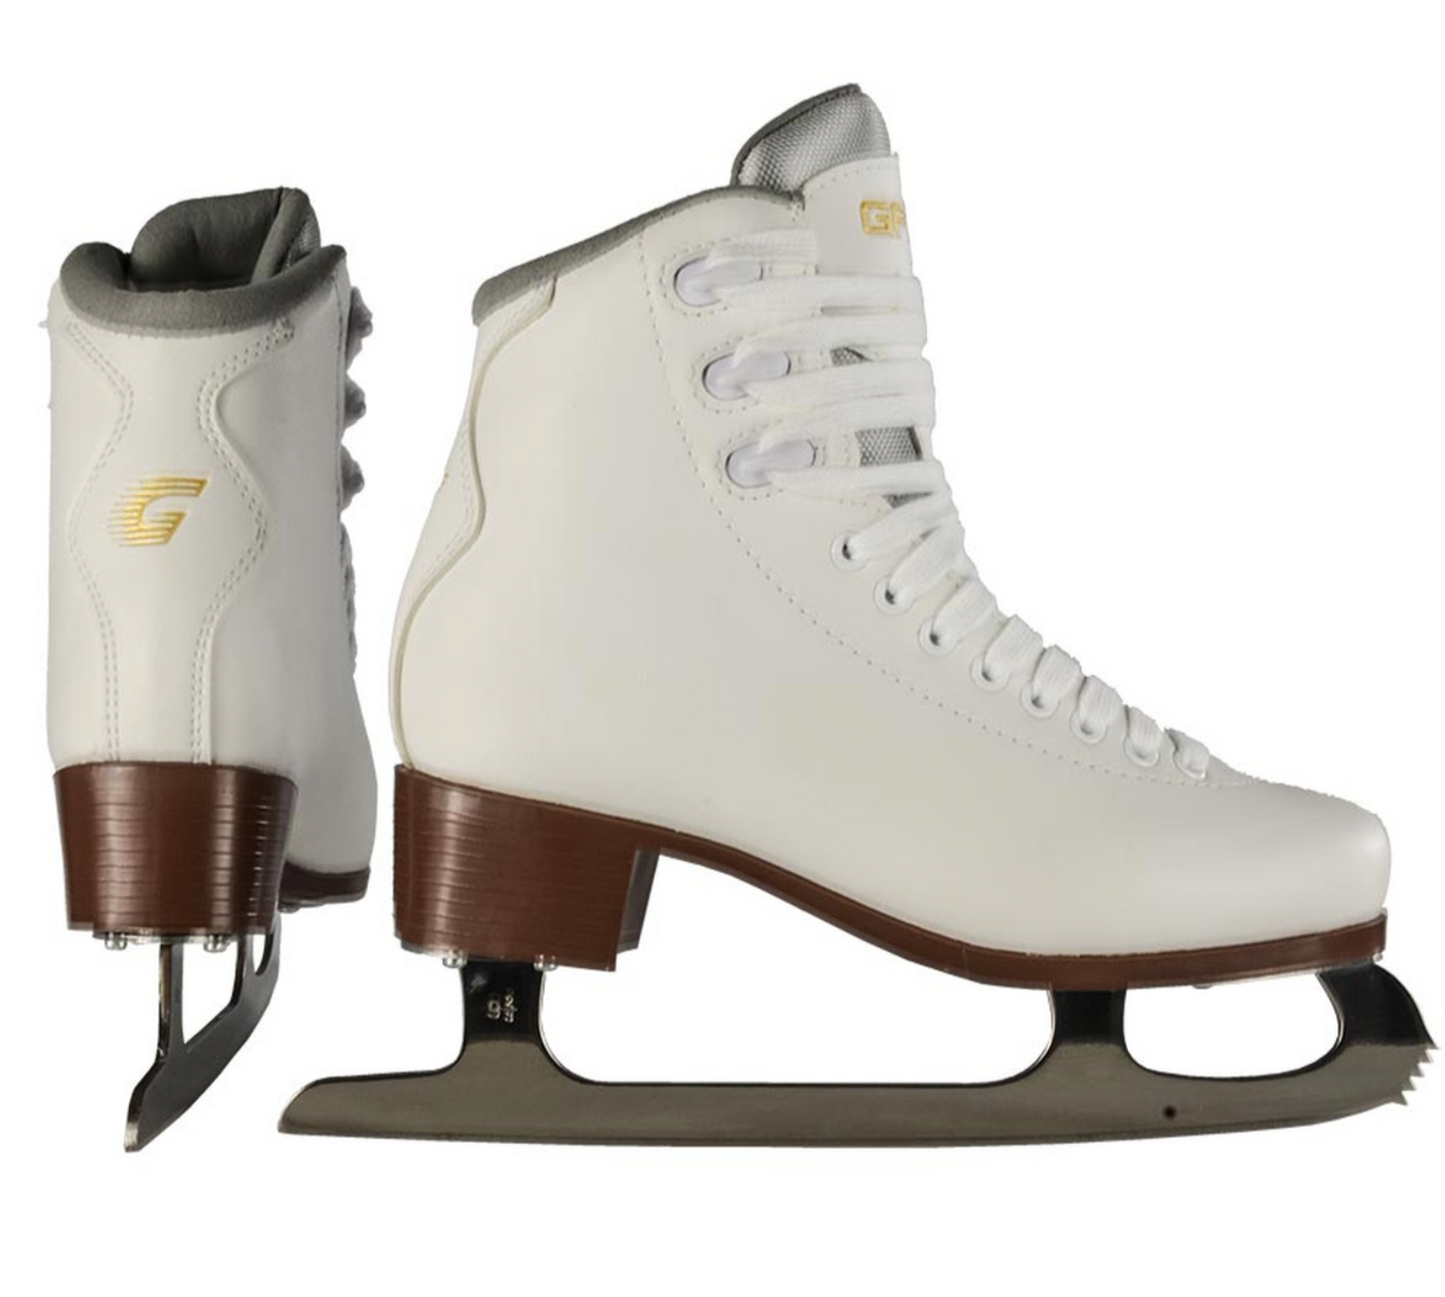 graf+tango+pair+of+ice+skates